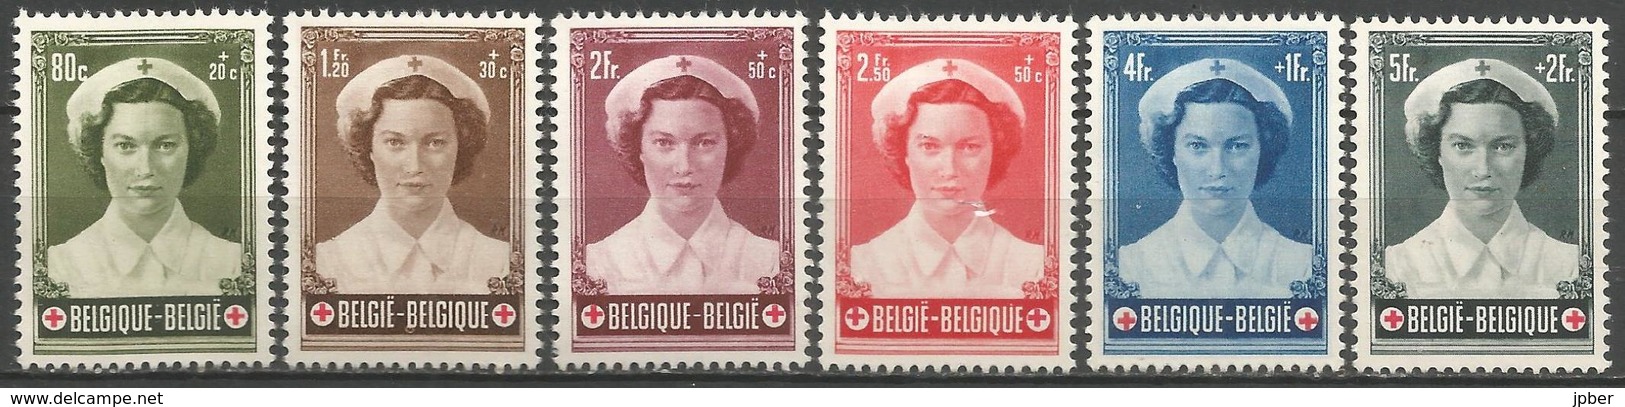 (E058) BELGIQUE - N°912à917 * - Croix-Rouge - Princesse Joséphine -Charlotte - Ungebraucht